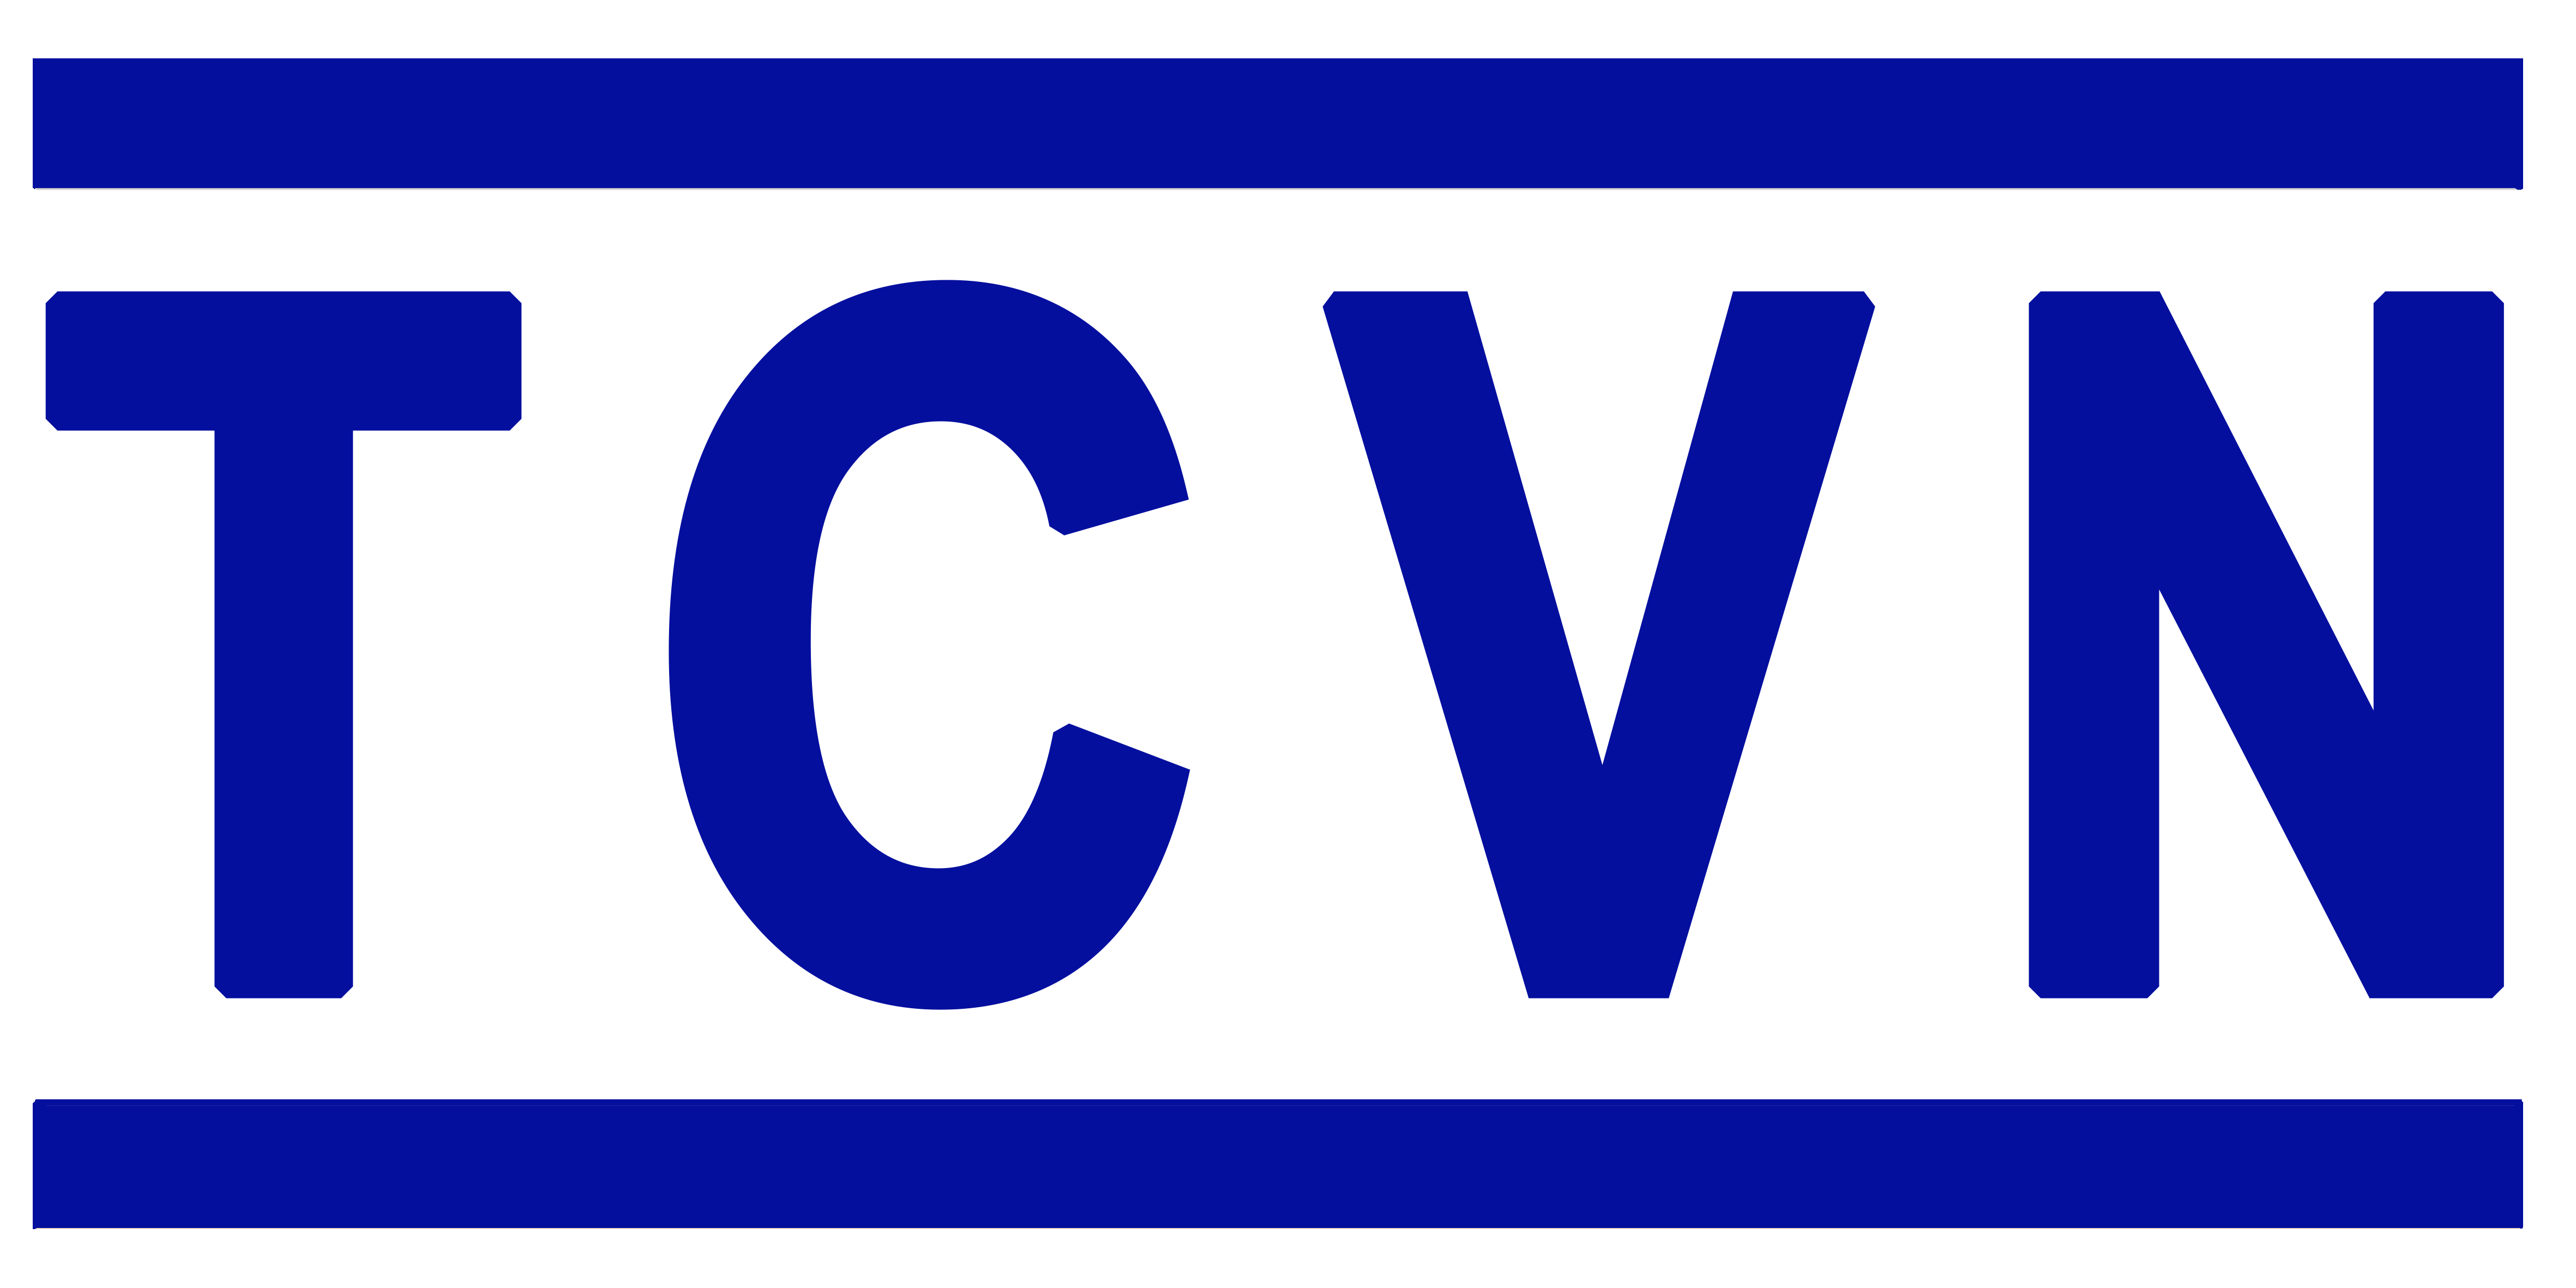 Danh mục tiêu chuẩn Quốc Gia (TCVN)  tháng 11 năm 2021